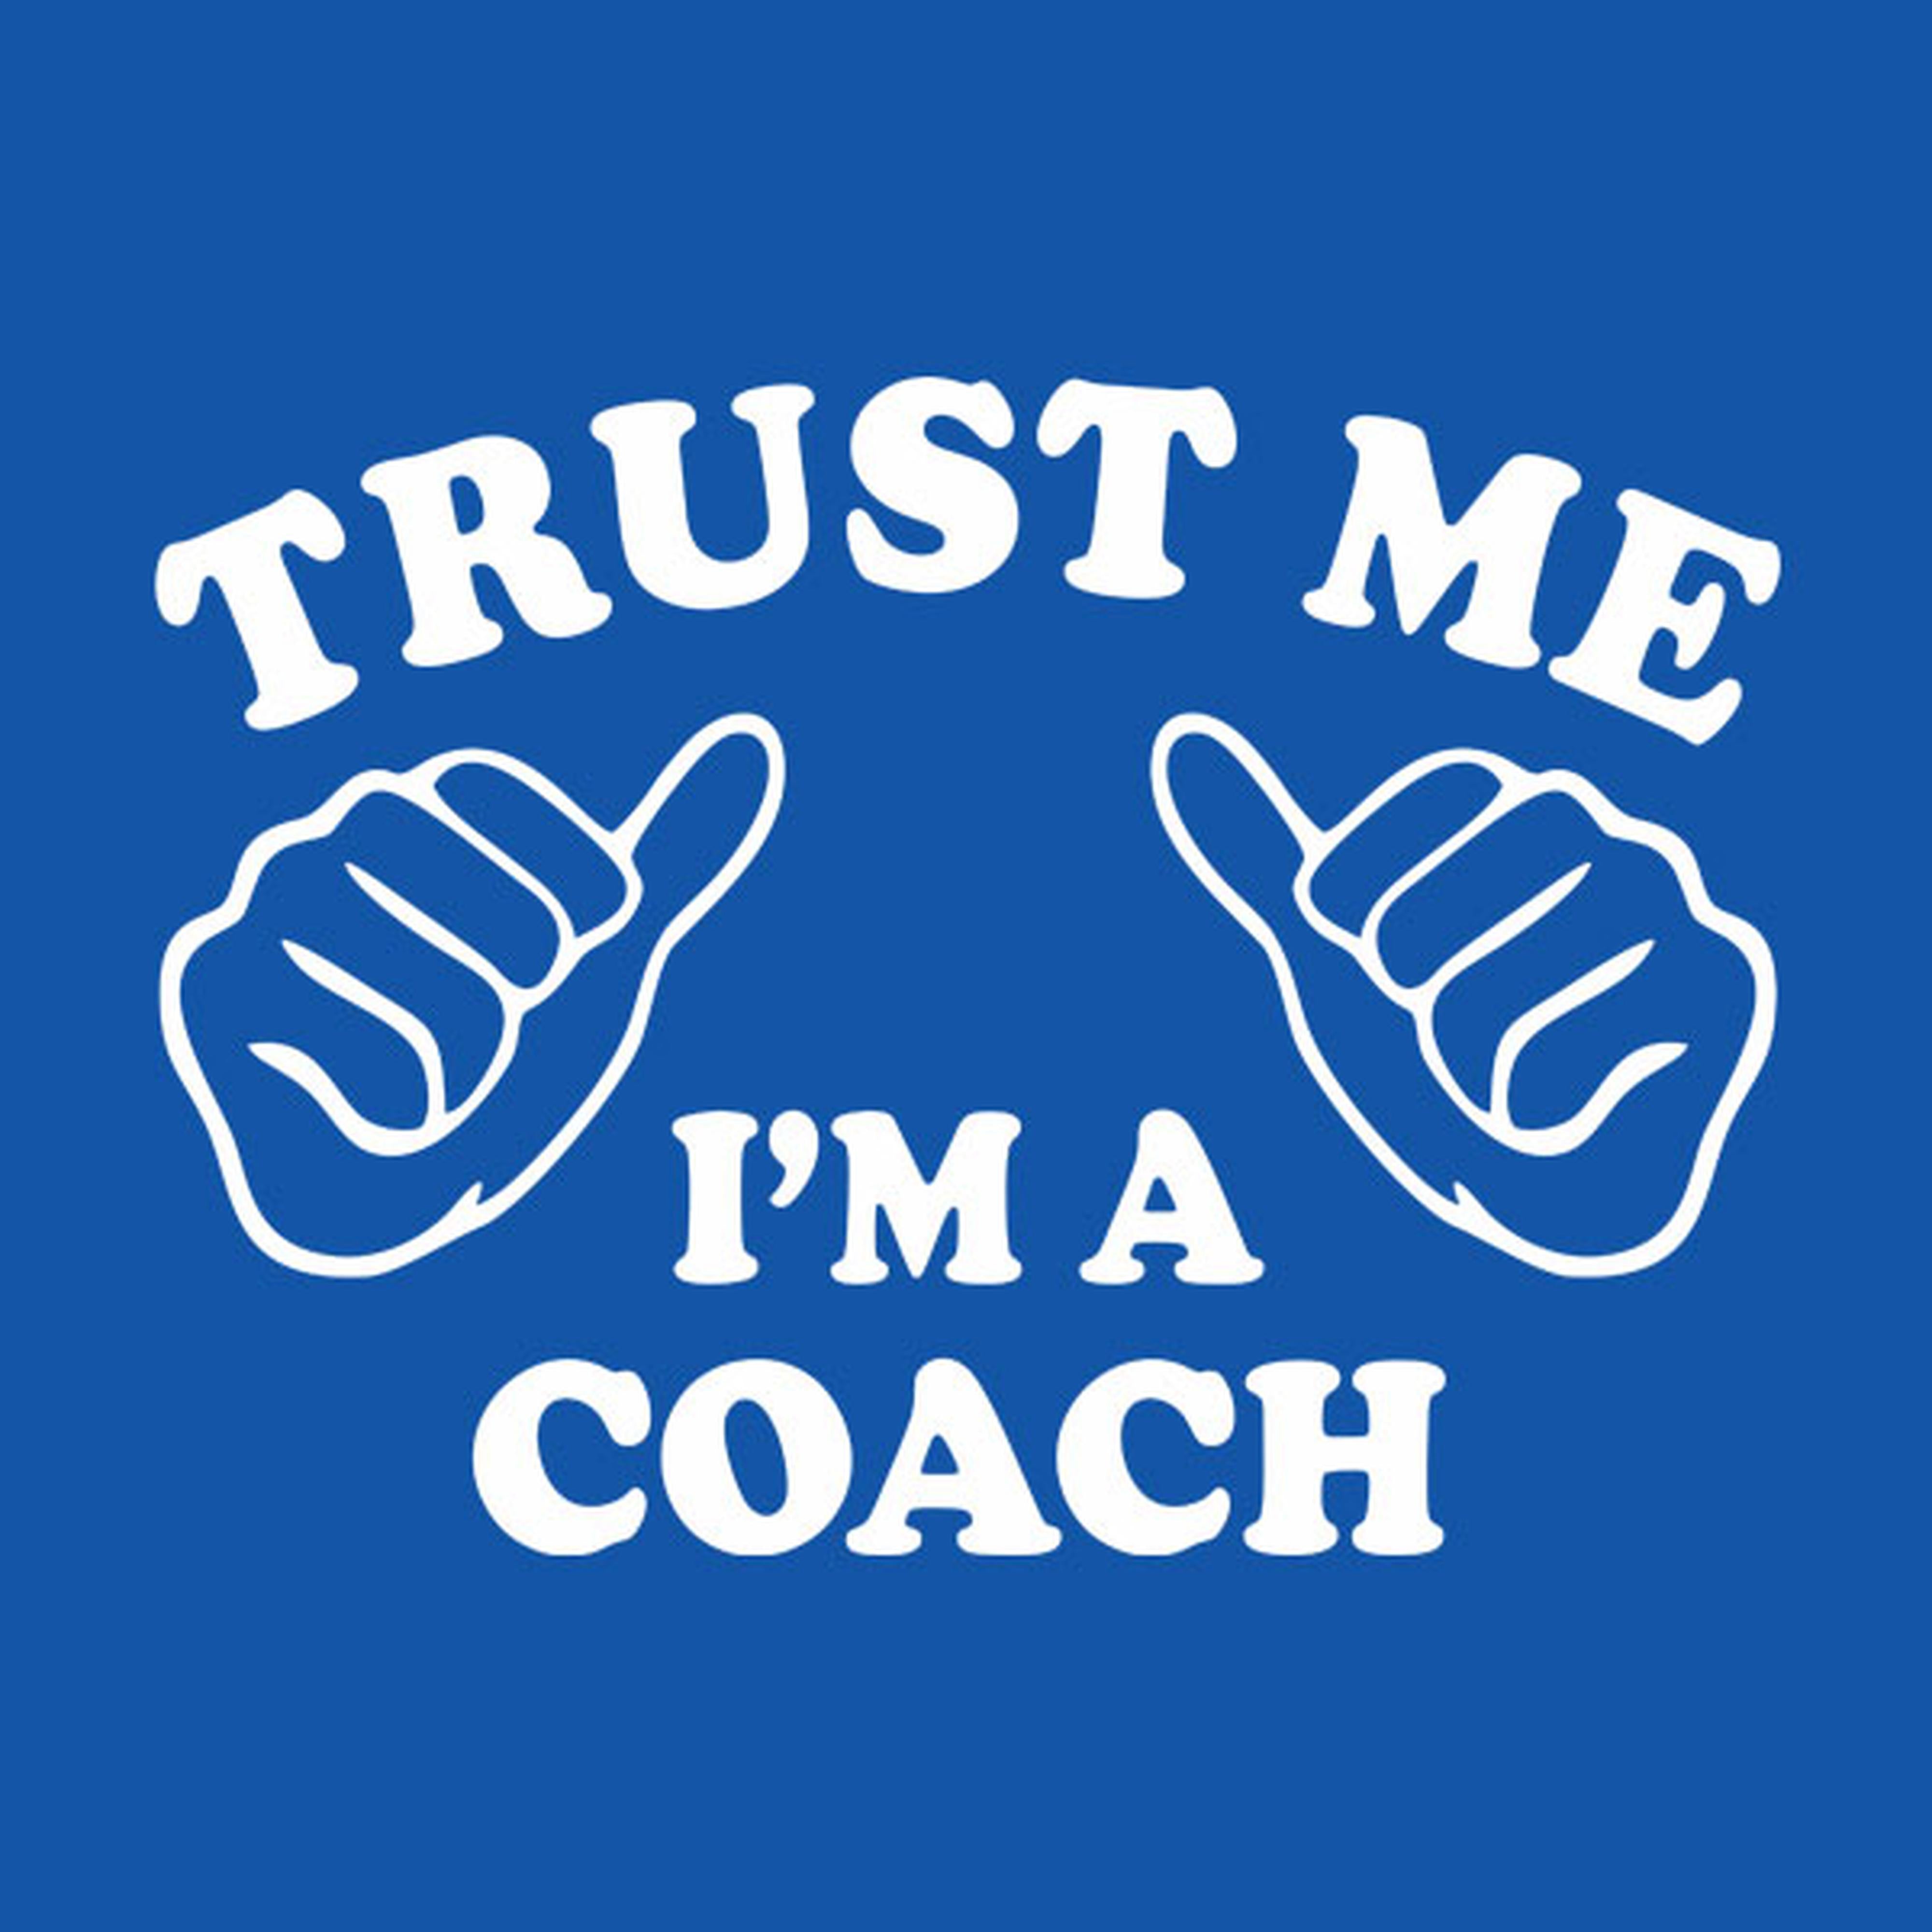 Trust me - I am a coach